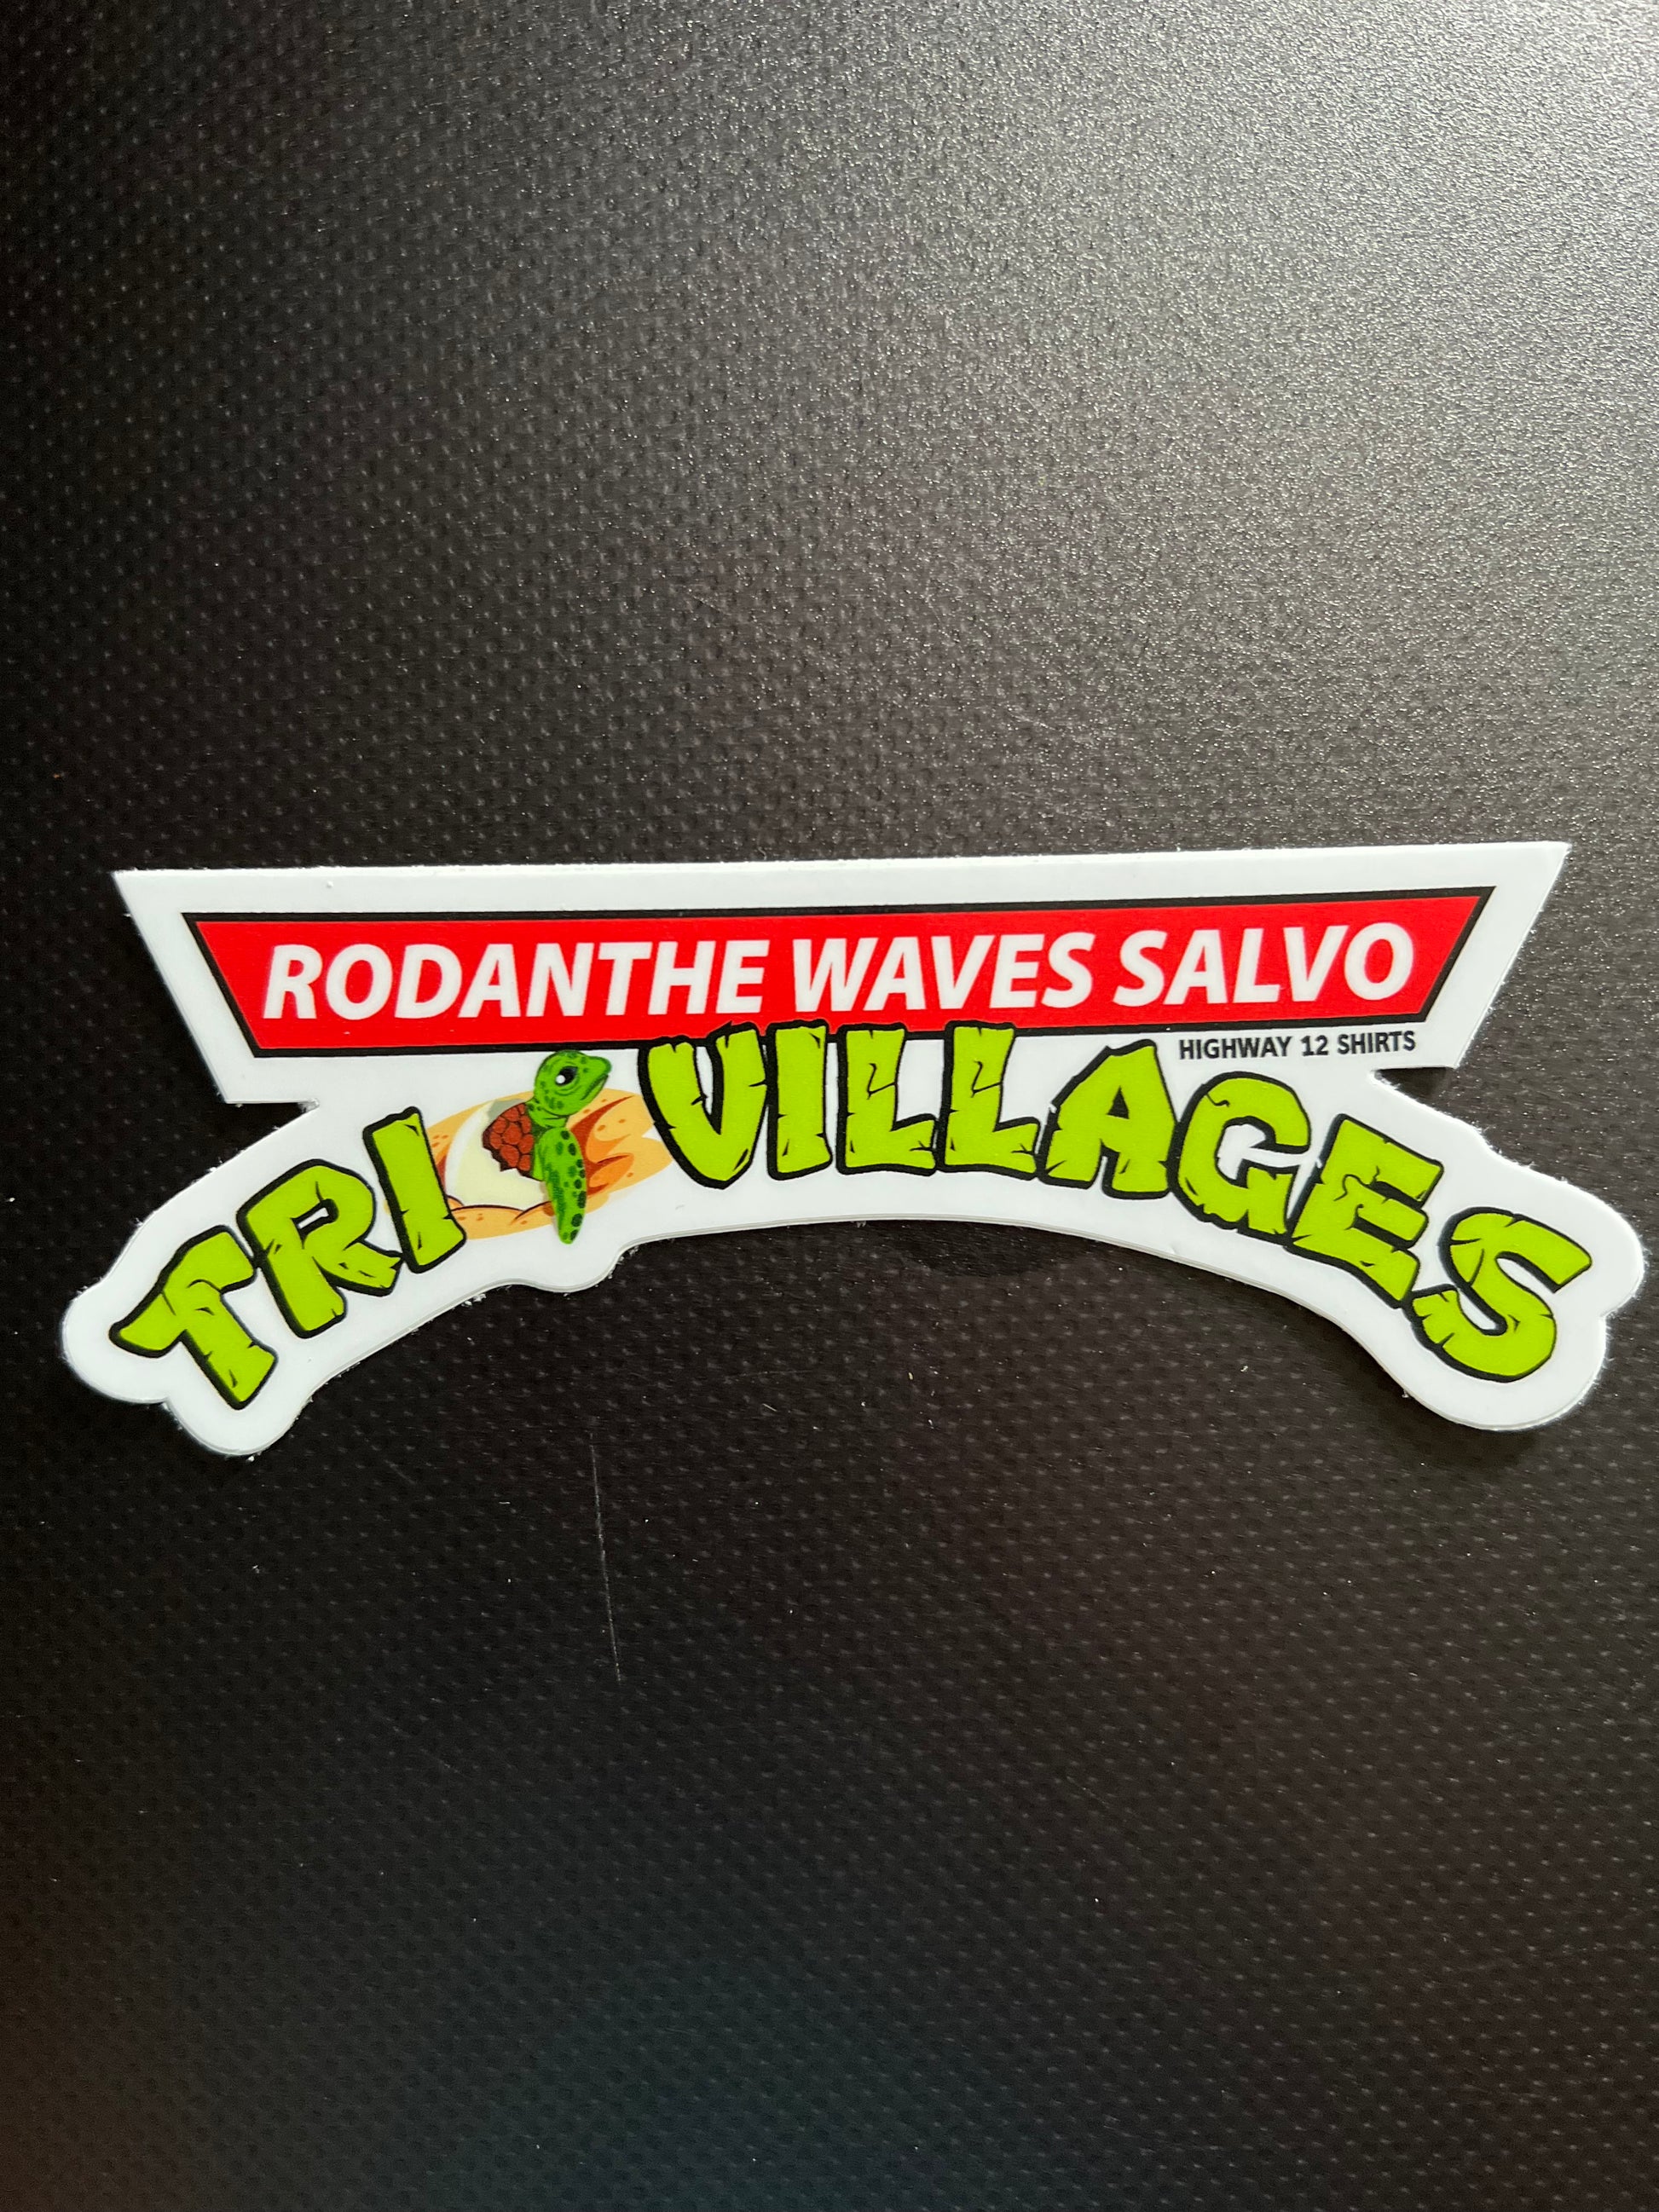 TriVillages sticker - Highway12Shirts